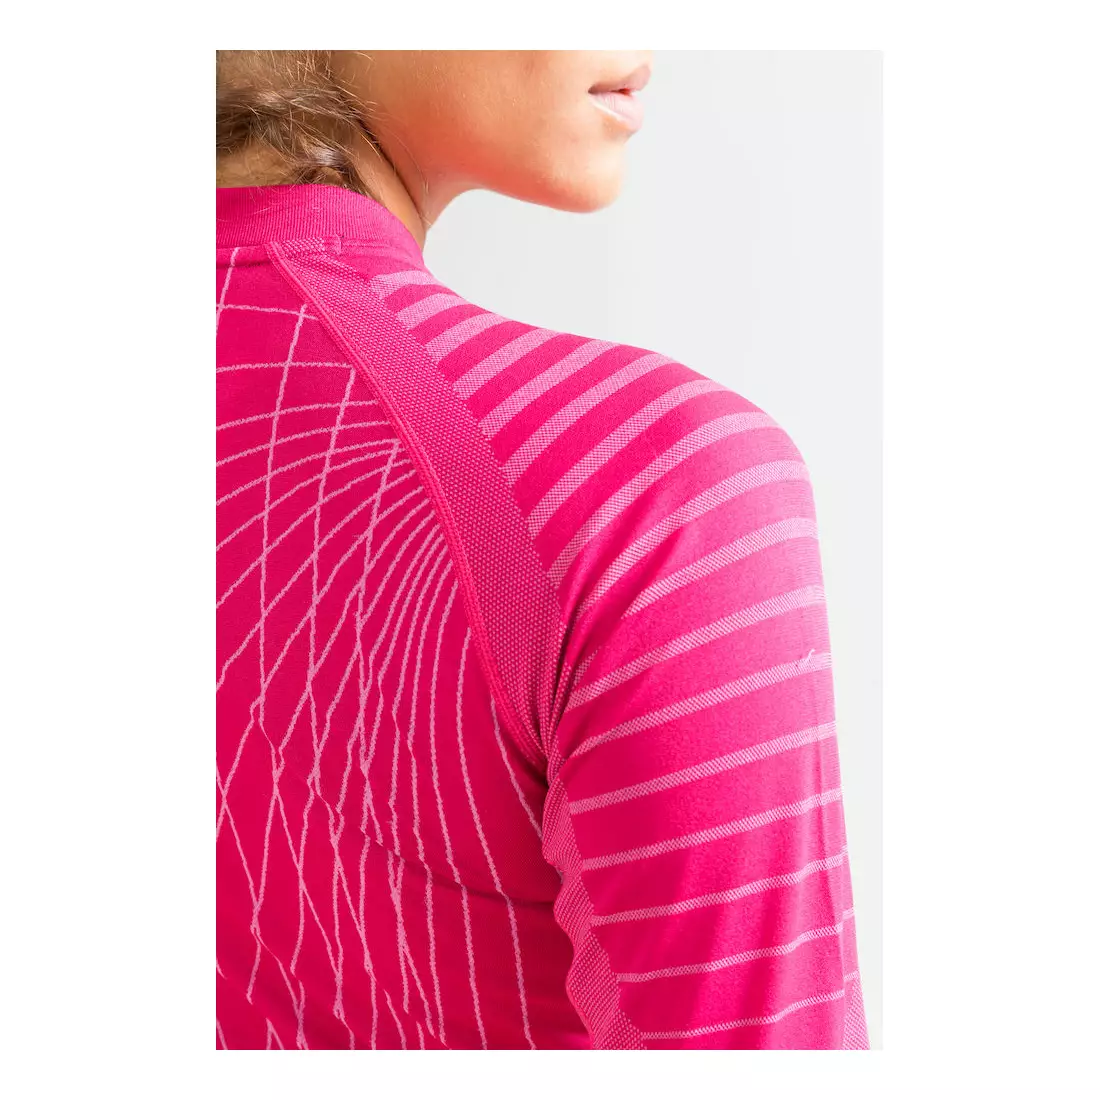 CRAFT ACTIVE INTENSITY - dámské tričko, termoaktivní prádlo, dlouhý rukáv 1905333-720000